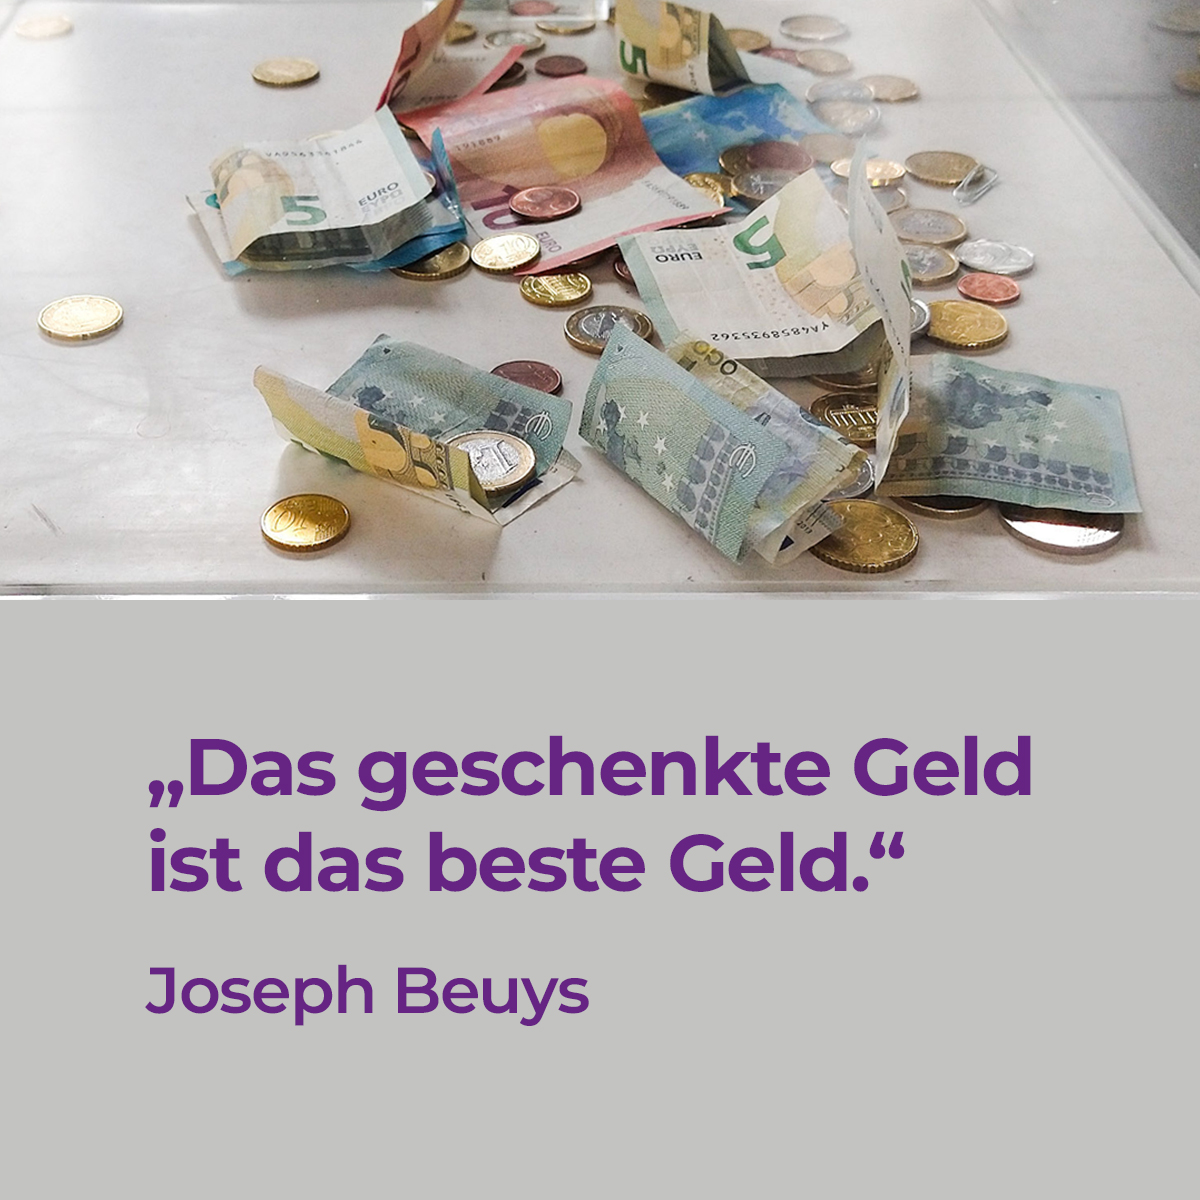 Spendenbox: Euro-Geldscheine und Münzen. Darunter das Zitat: "Das geschenkte Geld ist das beste Geld." Joseph Beuys